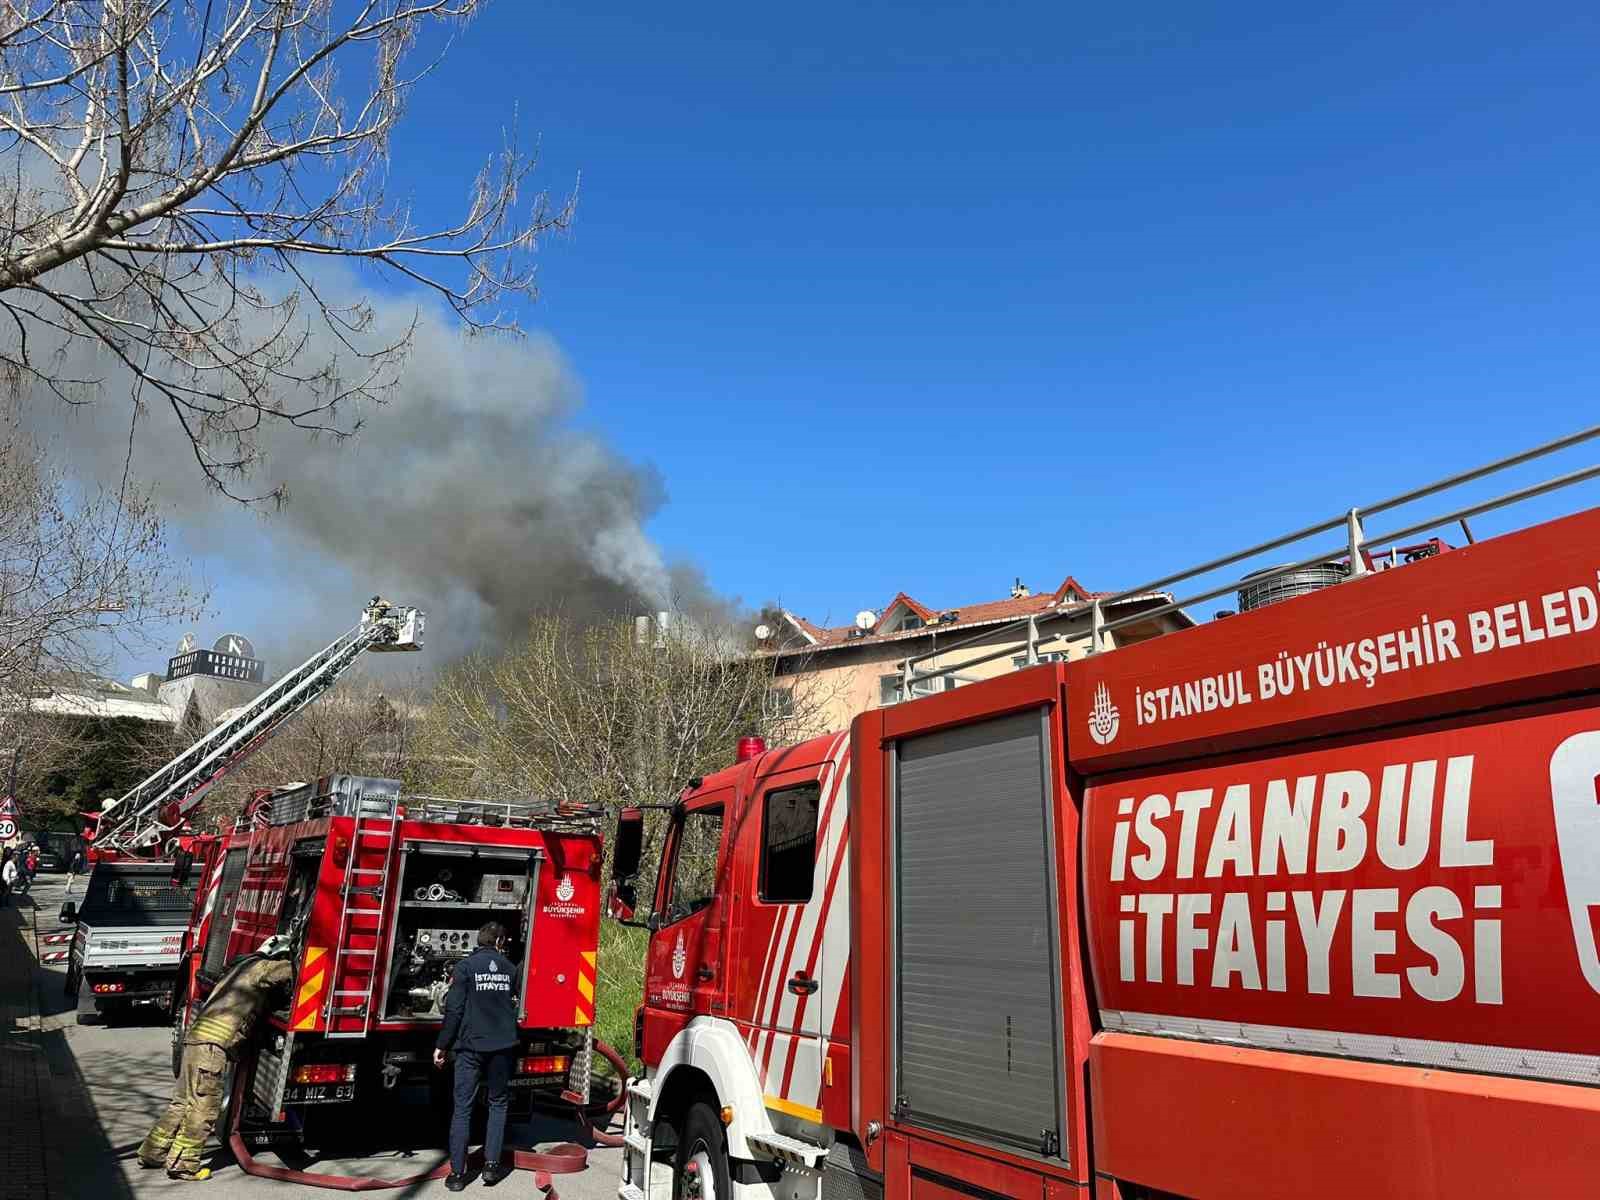 Ataşehir’de otomotiv servisinde yanan tiner, 5 katlı binayı aleve verdi
